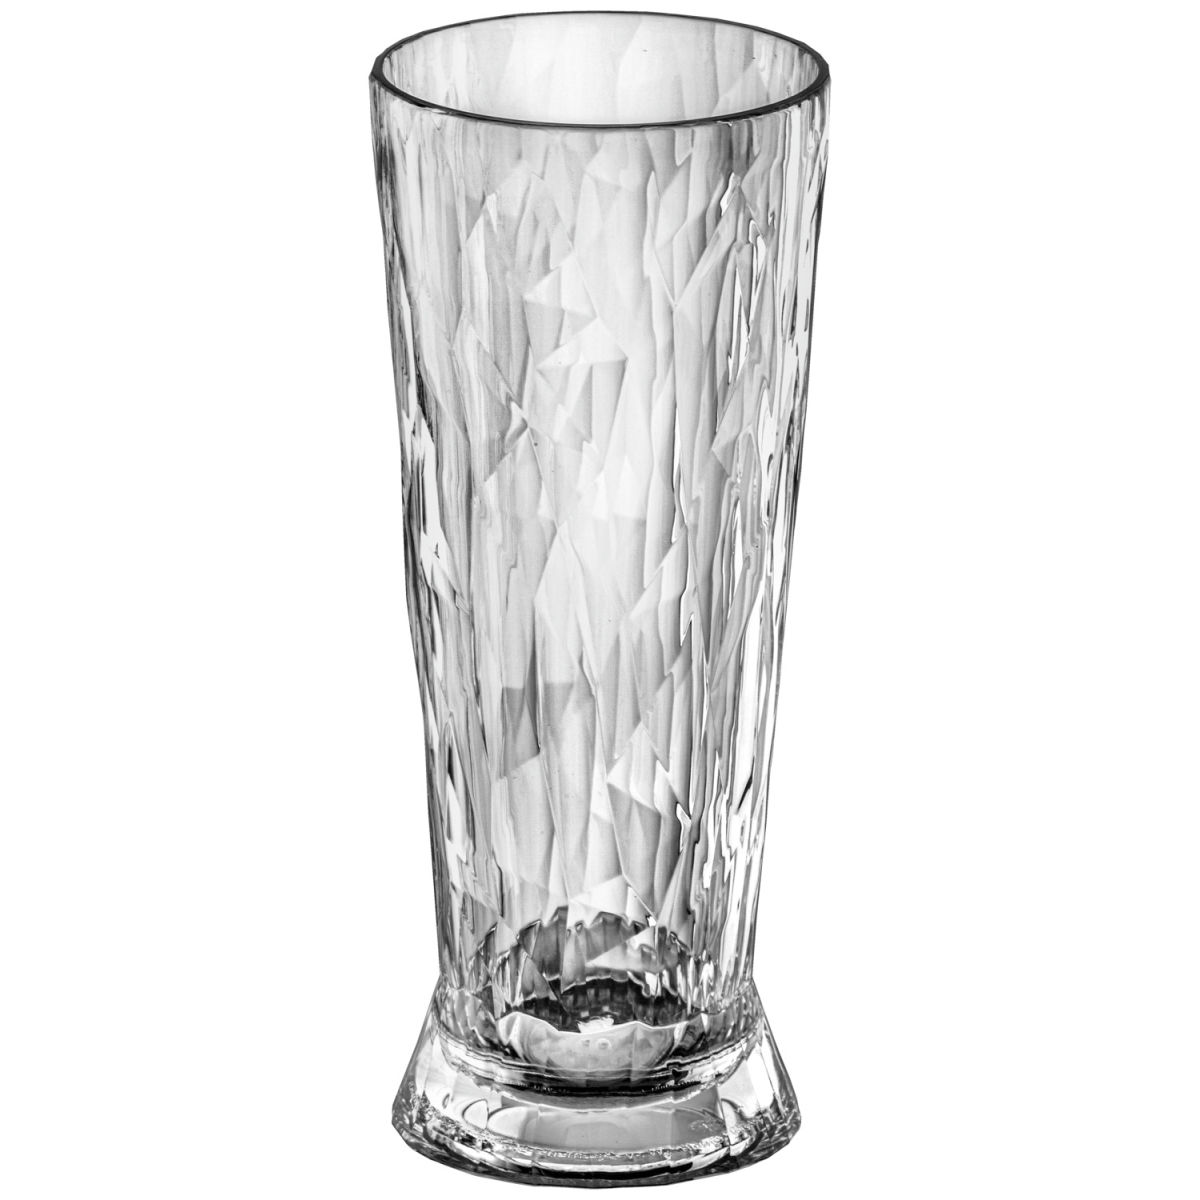 Koziol Bierglas Bier Club No. 10 Superglas; 450ml, 7.4x17.7 cm (ØxH); transparant; 0.3 l vulstreepje, 48 stuk / verpakking